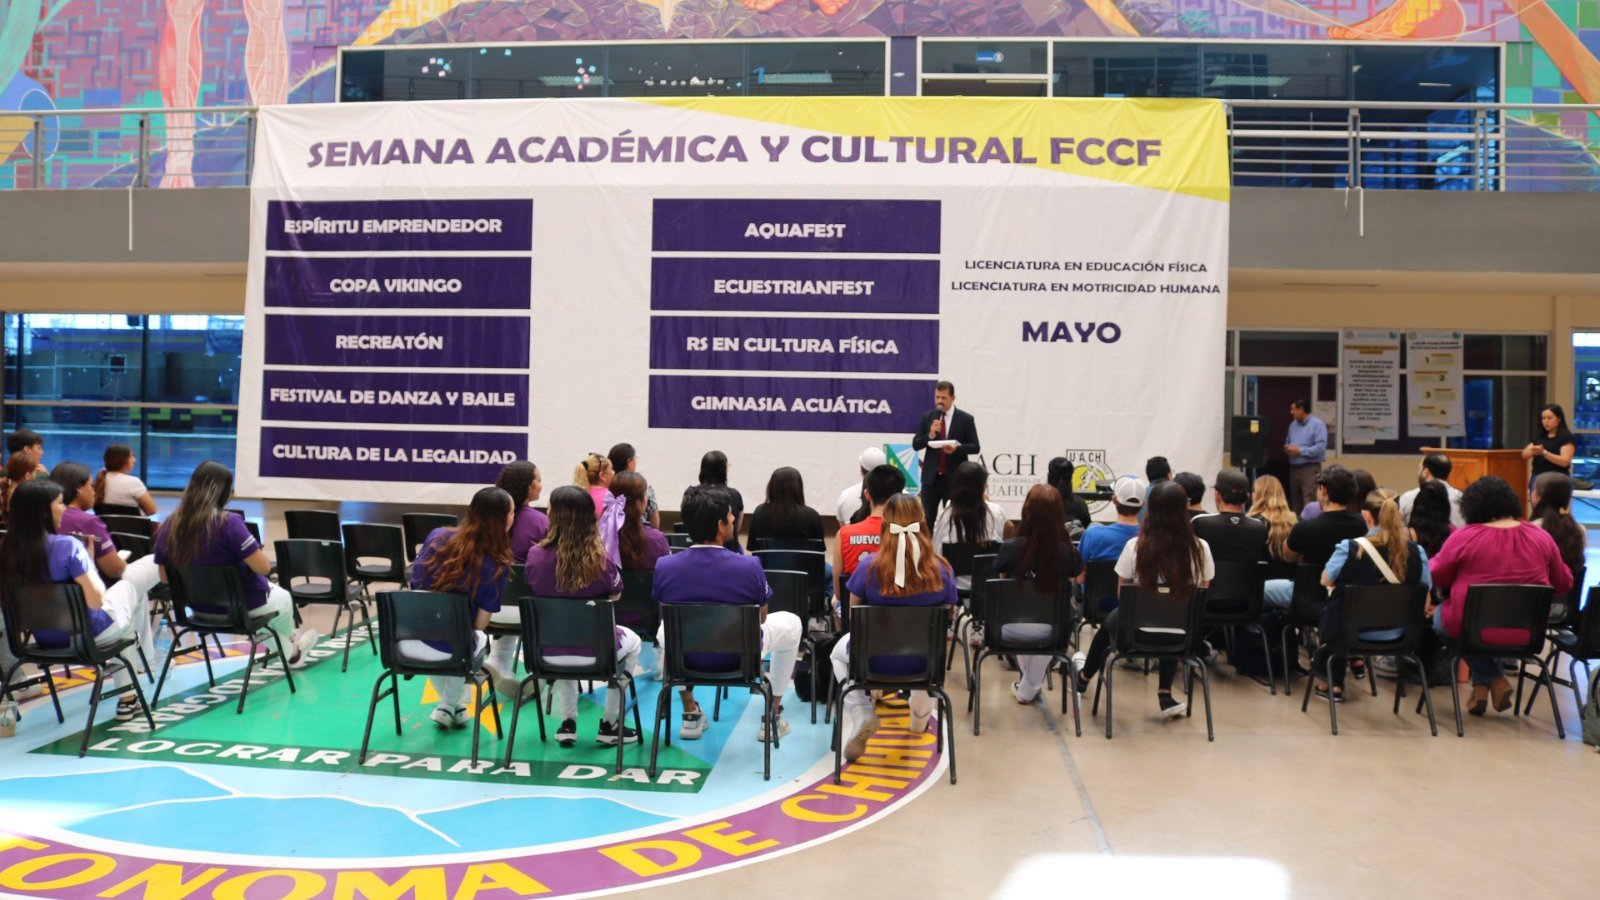 Semana-Académica-Cultural-y-Deportiva-de-FCCF-UACH1920.jpg